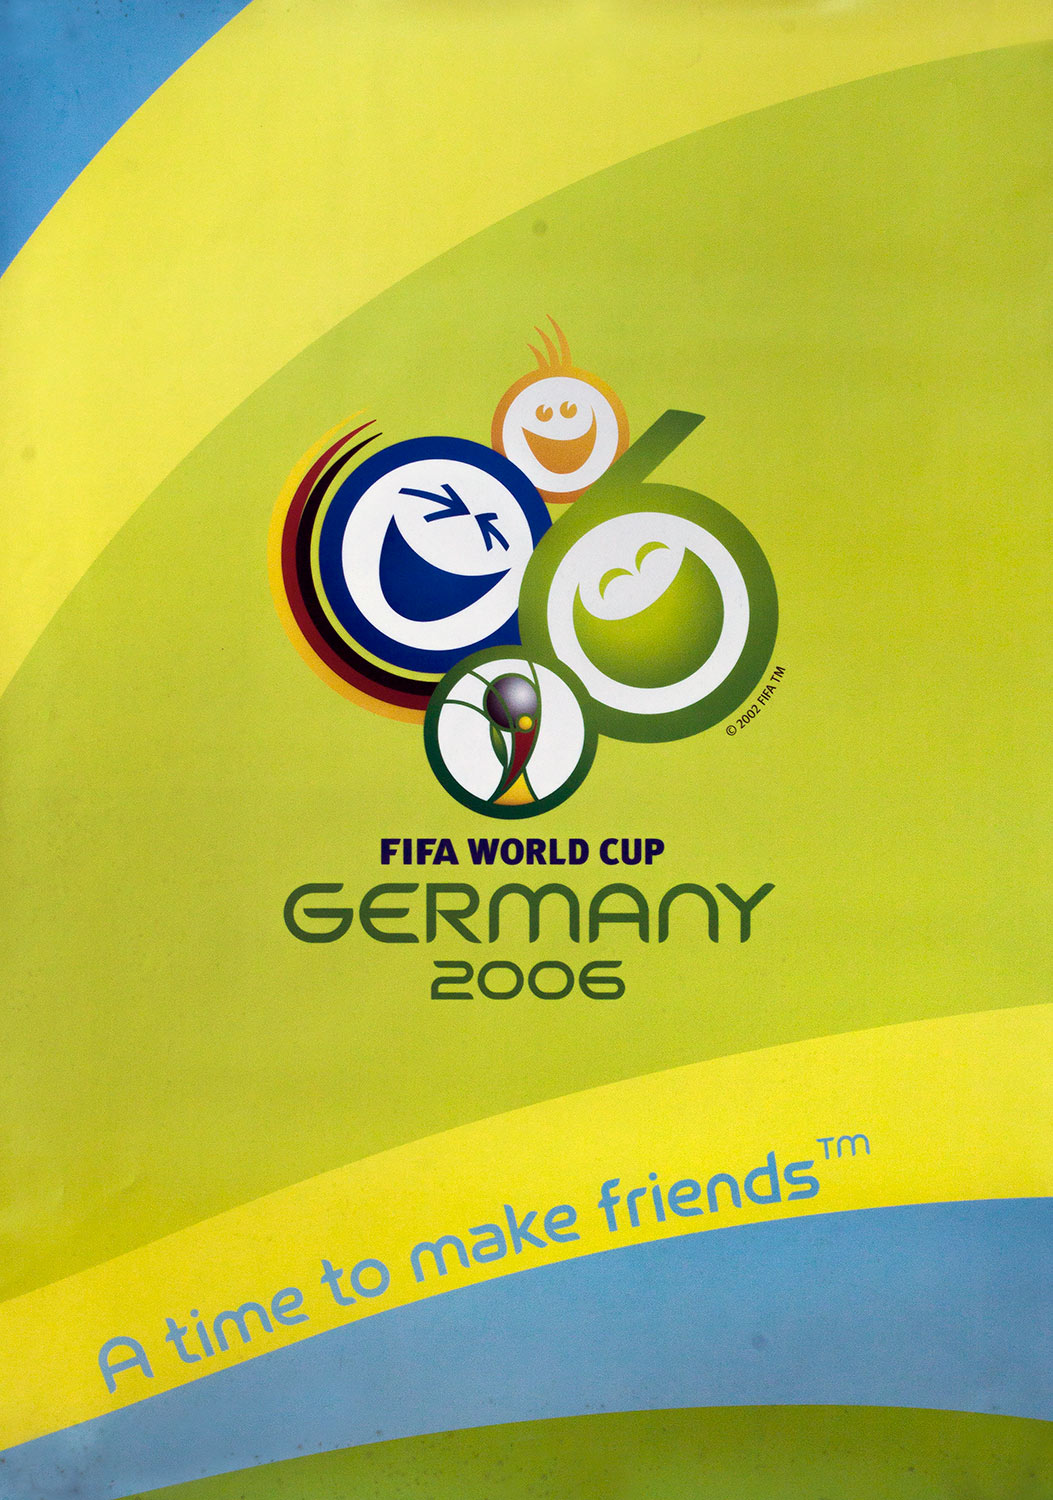 Plakat mit Abbildung des offiziellen Logos der Fußball-Weltmeisterschaft 2006 in Deutschland. Dieses besteht aus drei lachenden Smileys sowie einem stilsierten Weltmeisterpokal